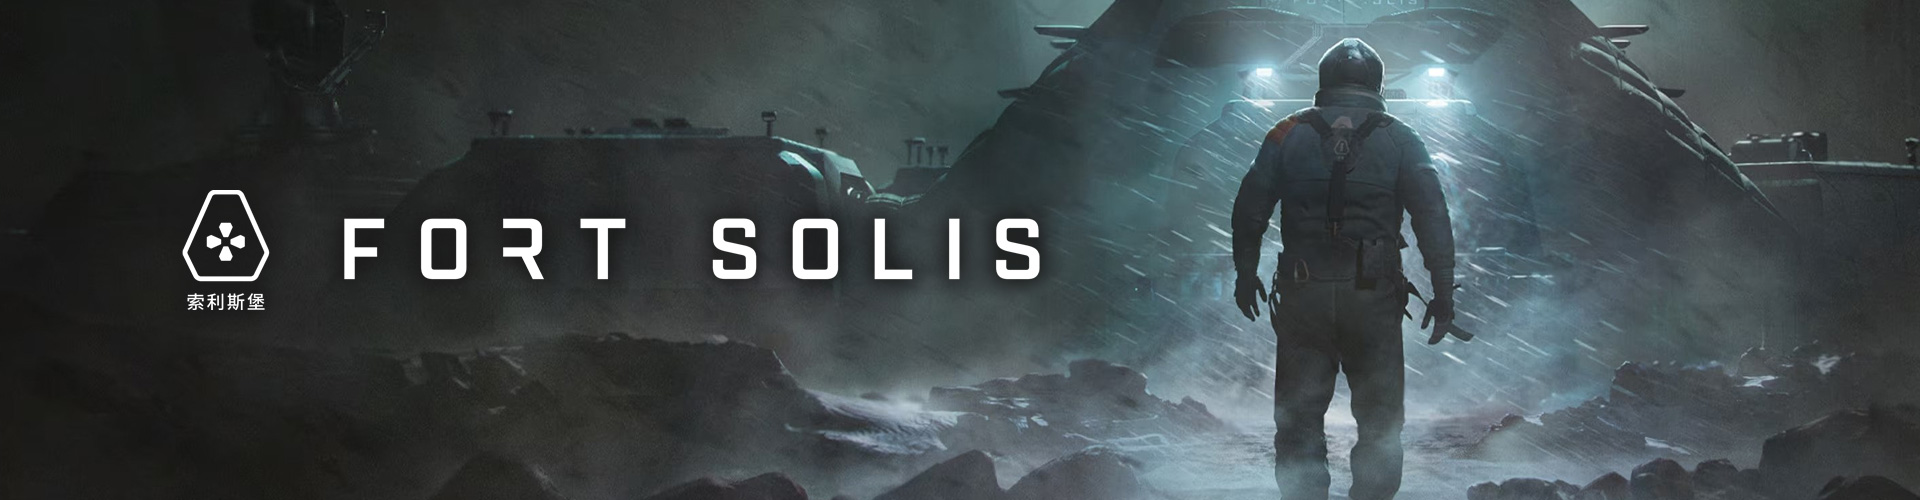 Fort Solis: Ein Sci-Fi-Horror-Thriller 